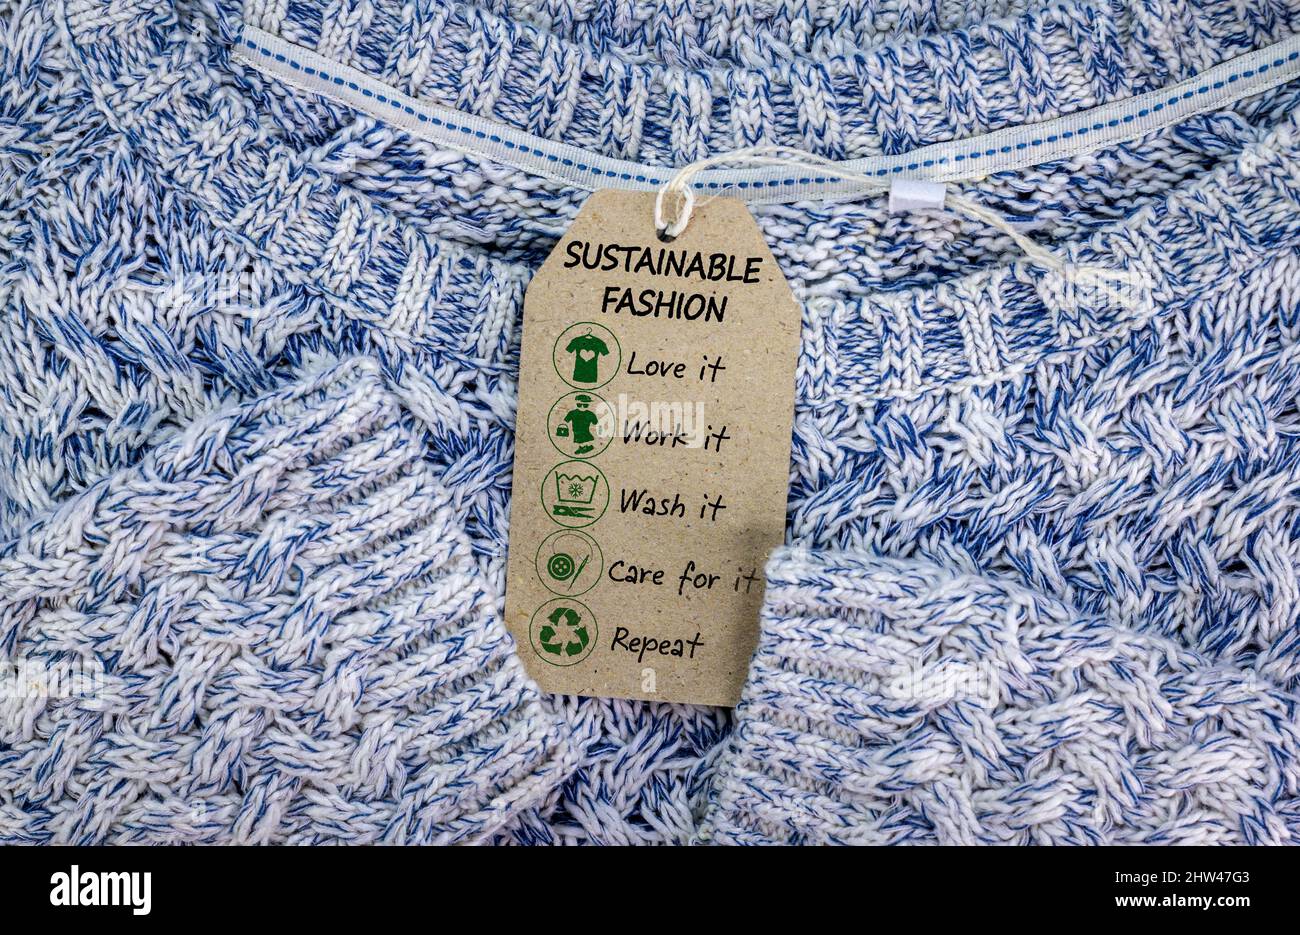 Nachhaltige Mode-Ikone auf dem Pulli-Label mit tragen, arbeiten, lieben, waschen, pflegen, Wiederhole die Symbole, um Kleidung nachhaltig zu gestalten Stockfoto